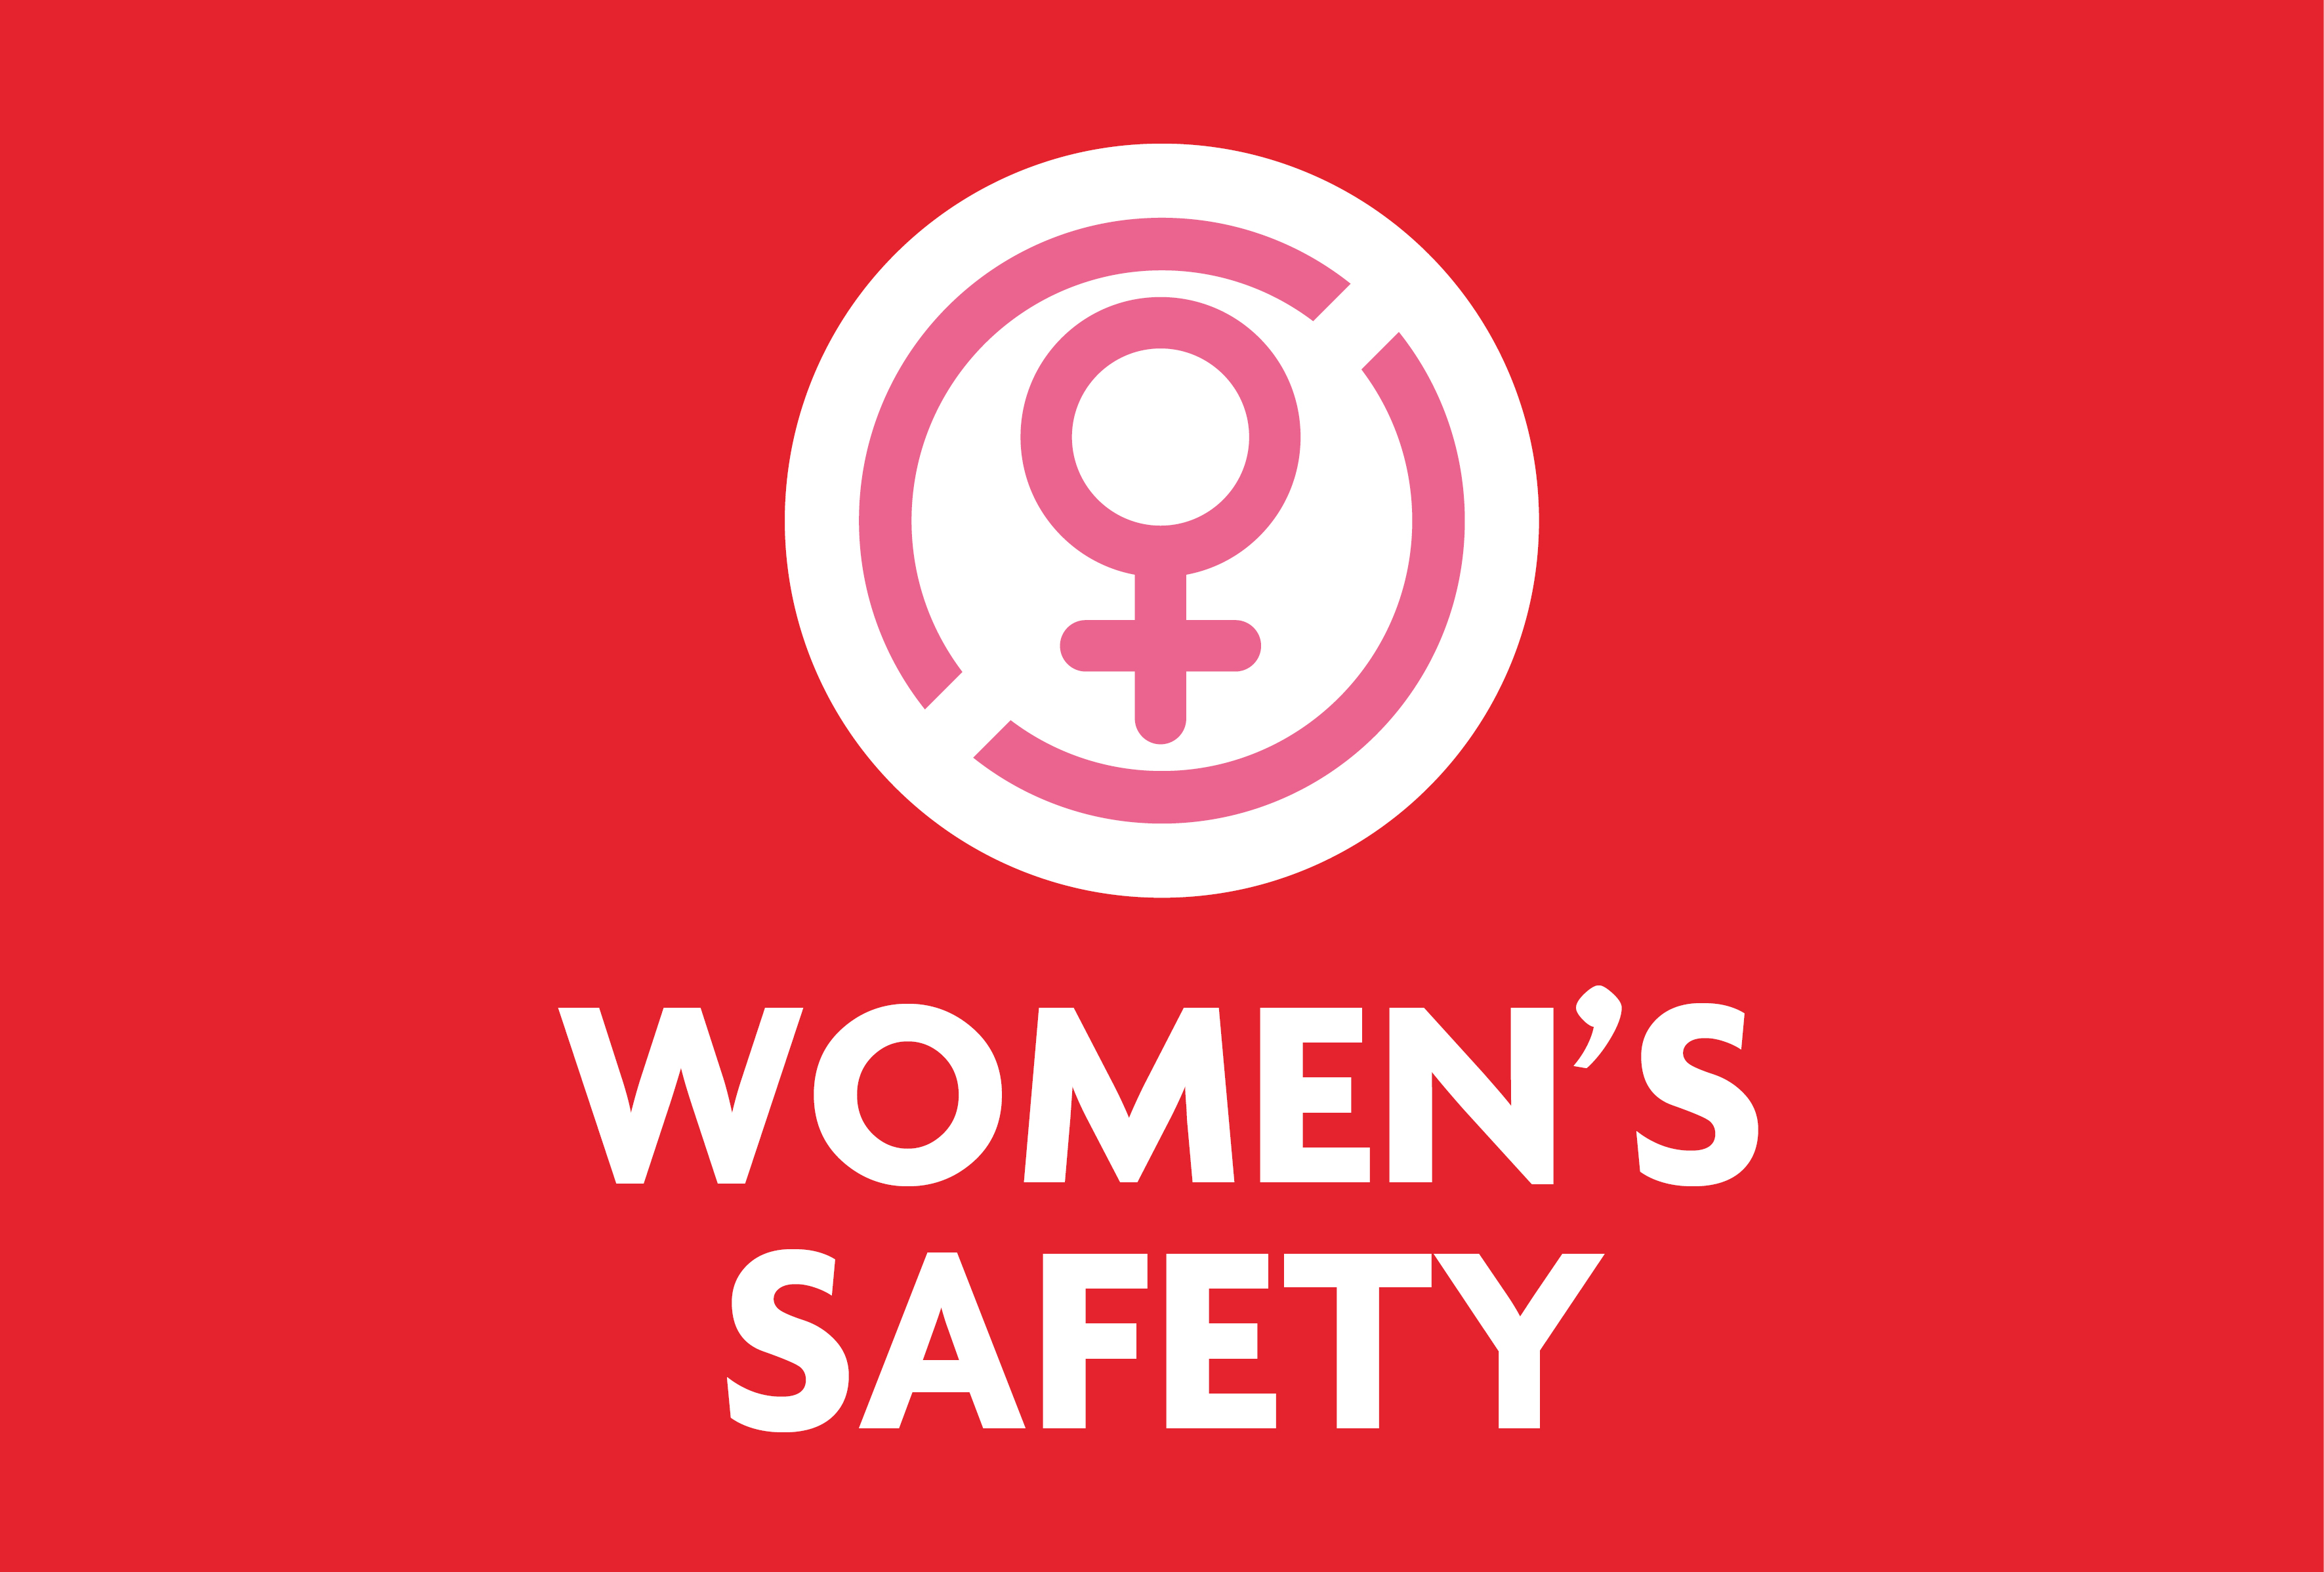 Women's safety